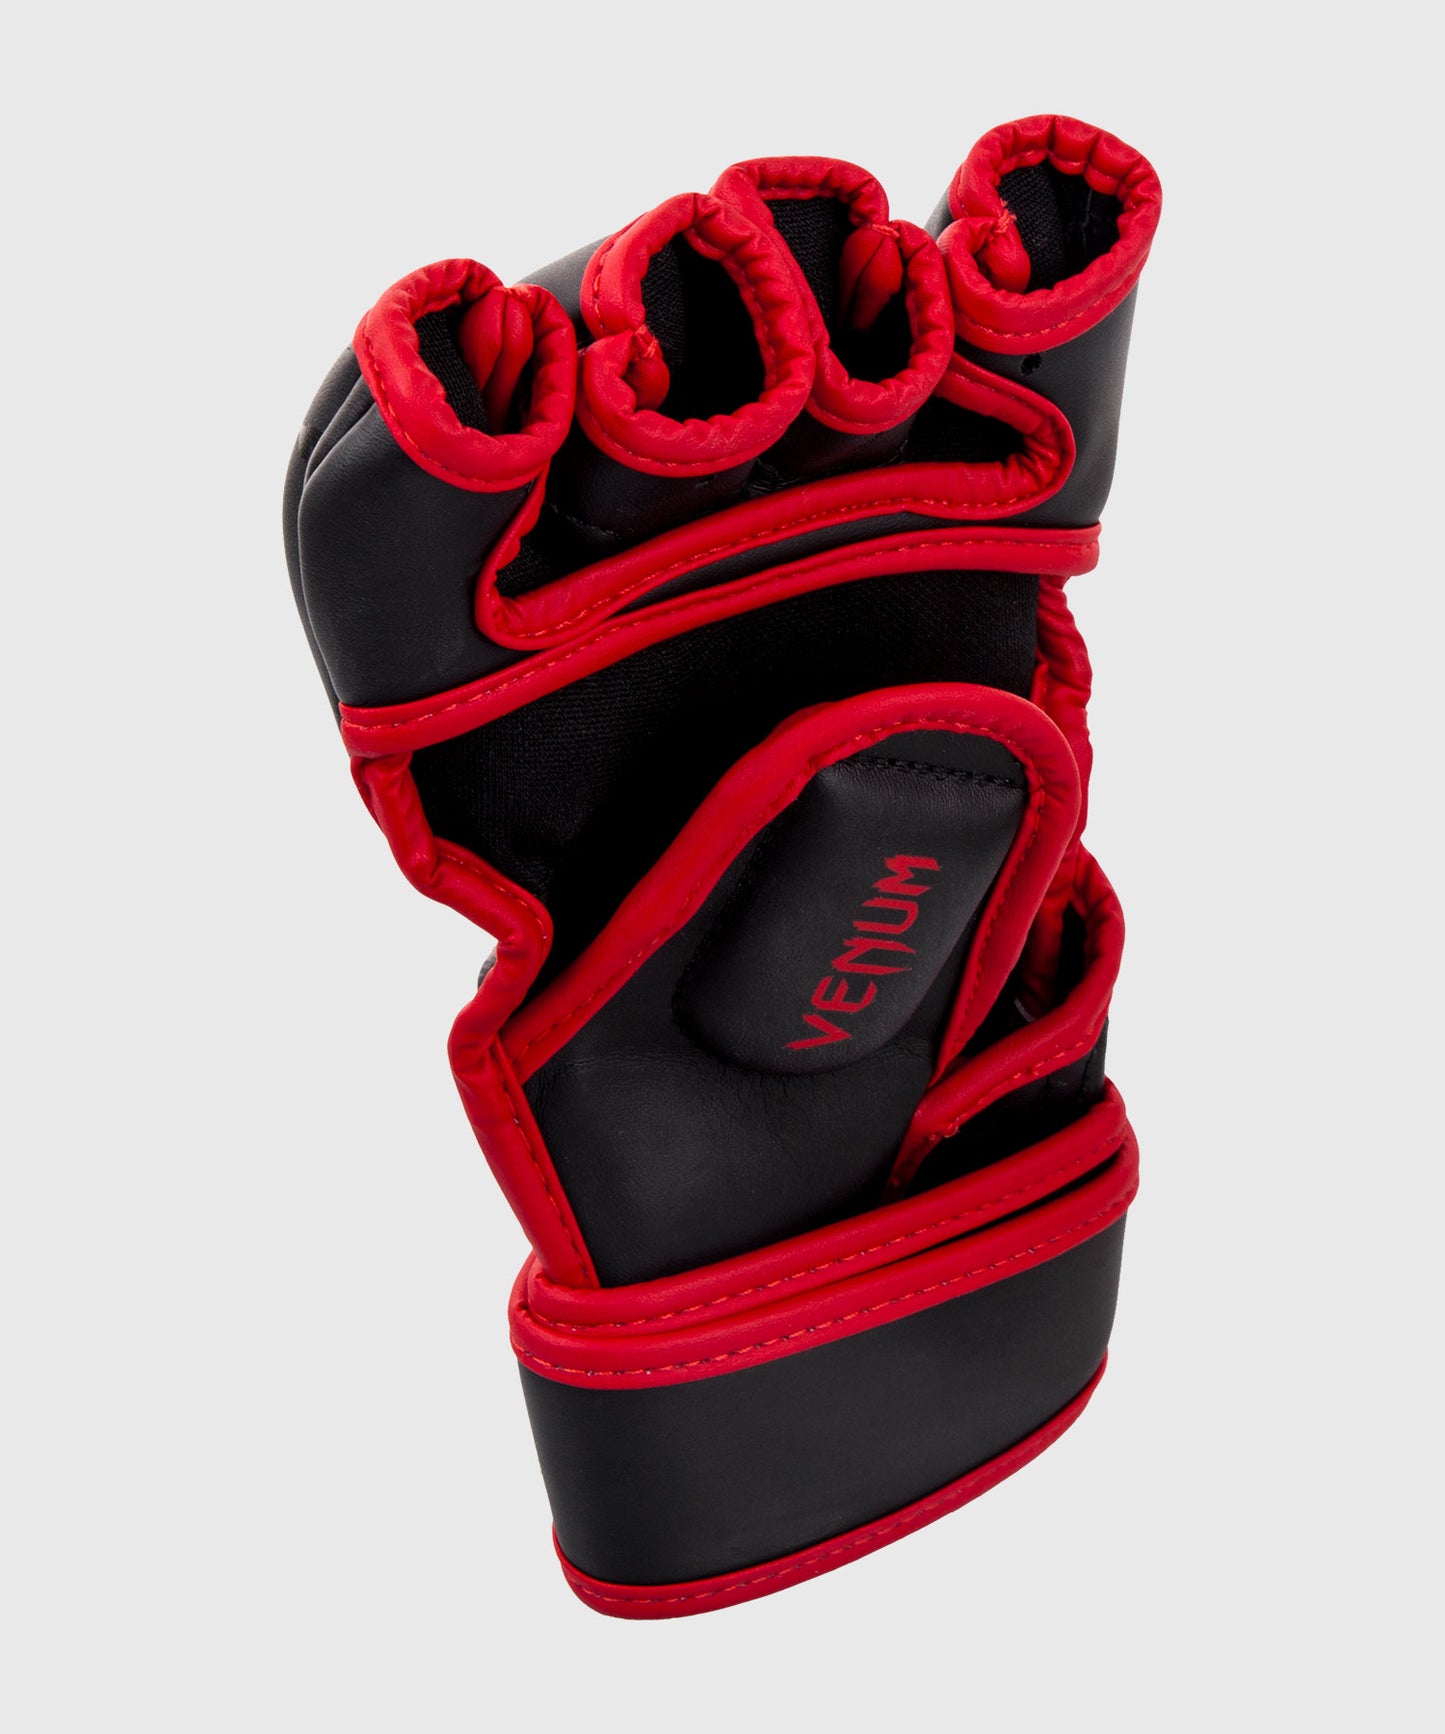 Venum Gladiator 3.0 MMA Handschuhe - Schwarz/Weiß